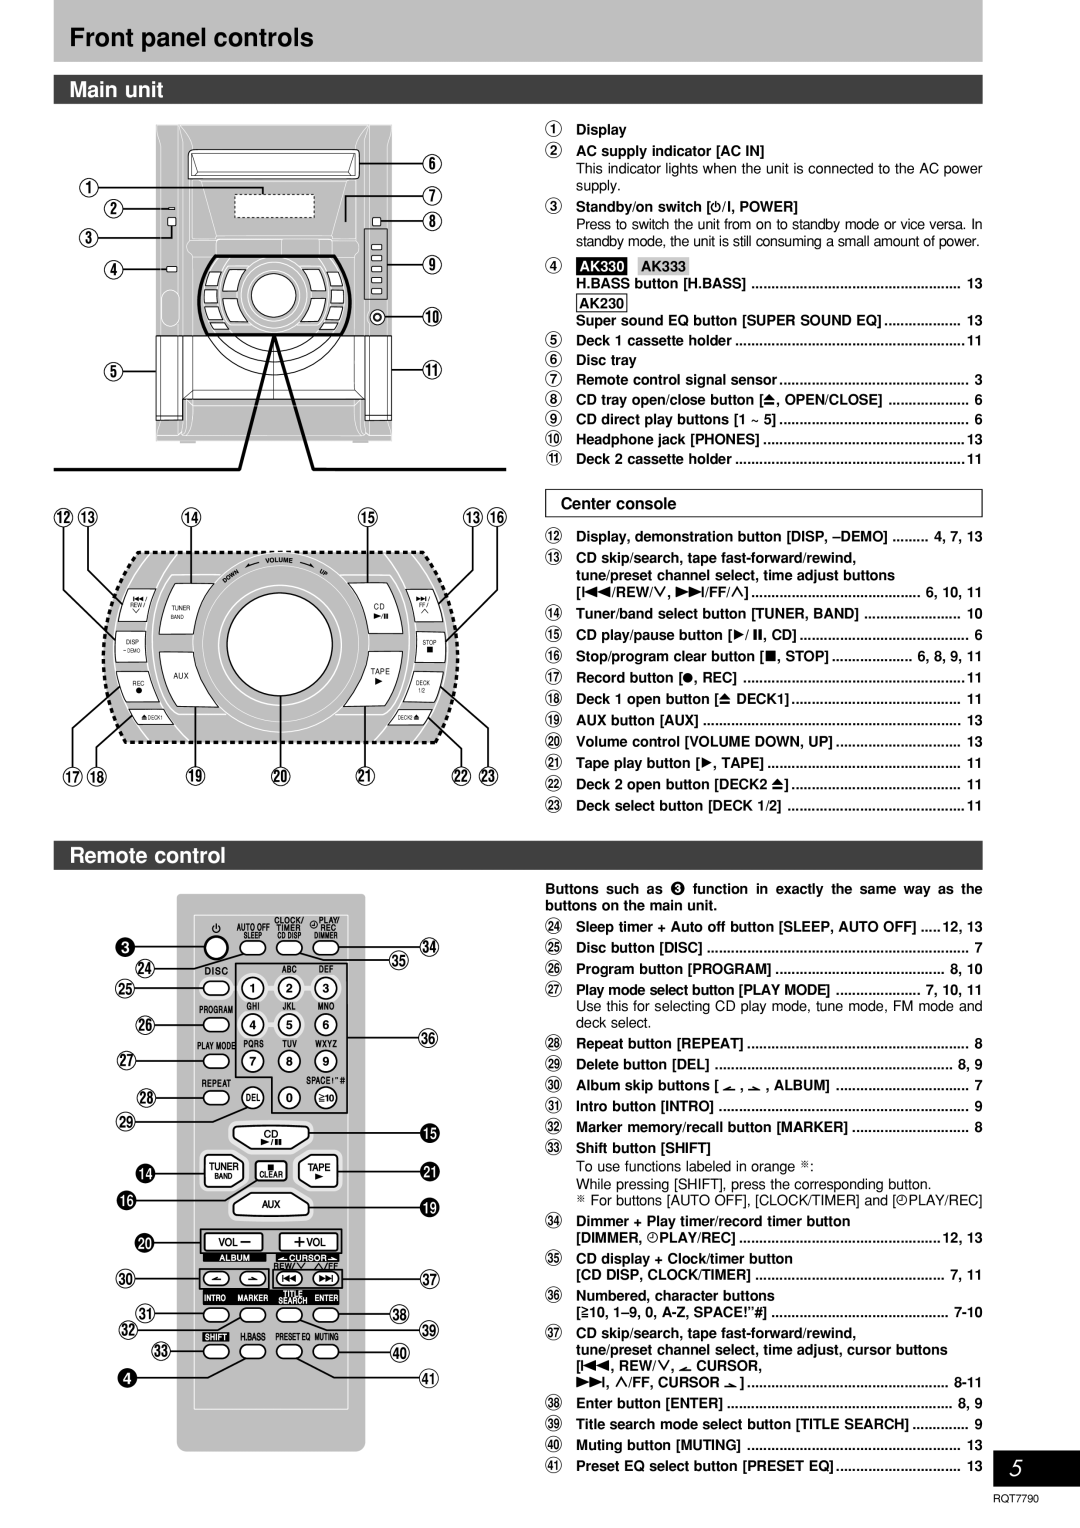 Panasonic SC-AK333, SC-AK230 operating instructions Front panel controls, Main unit, Remote control, 4AK330 AK333 